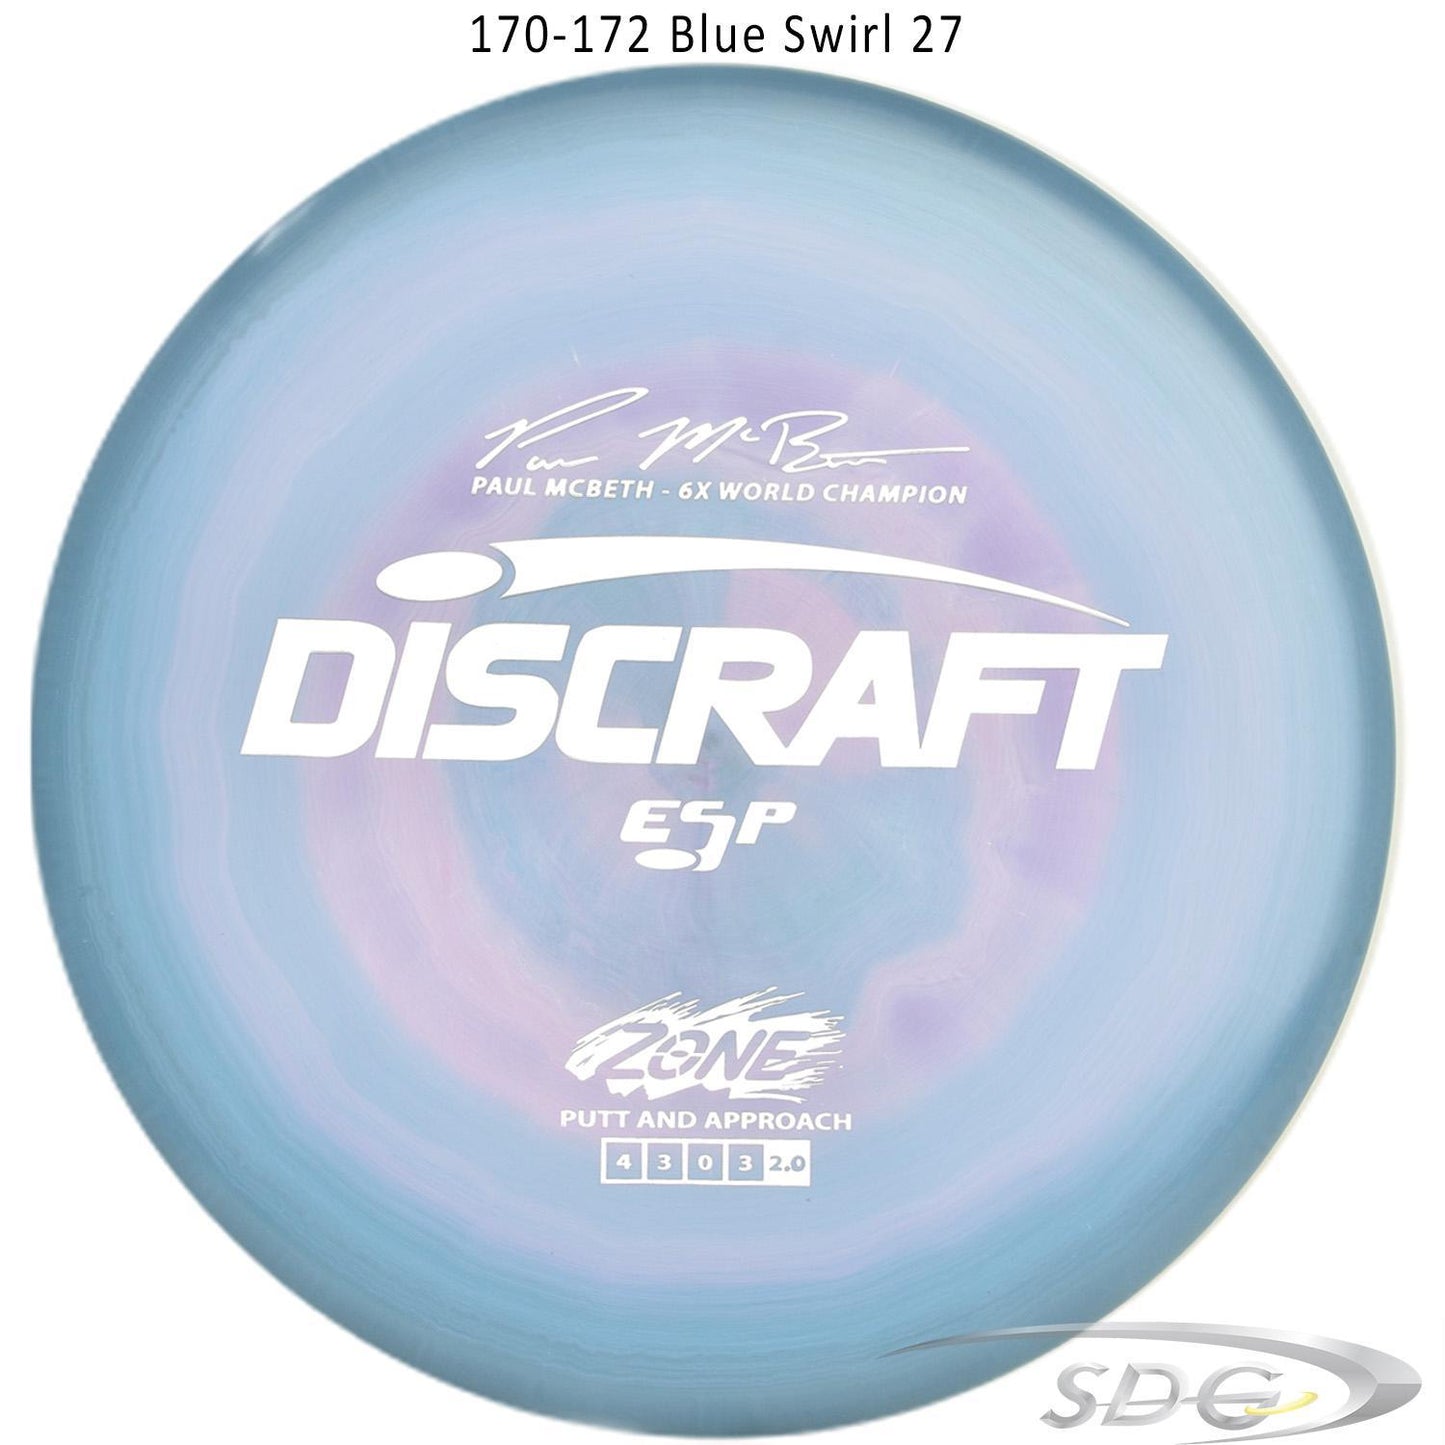 discraft-esp-zone-6x-paul-mcbeth-signature-series-disc-golf-putter-172-170-weights 170-172 Blue Swirl 27 